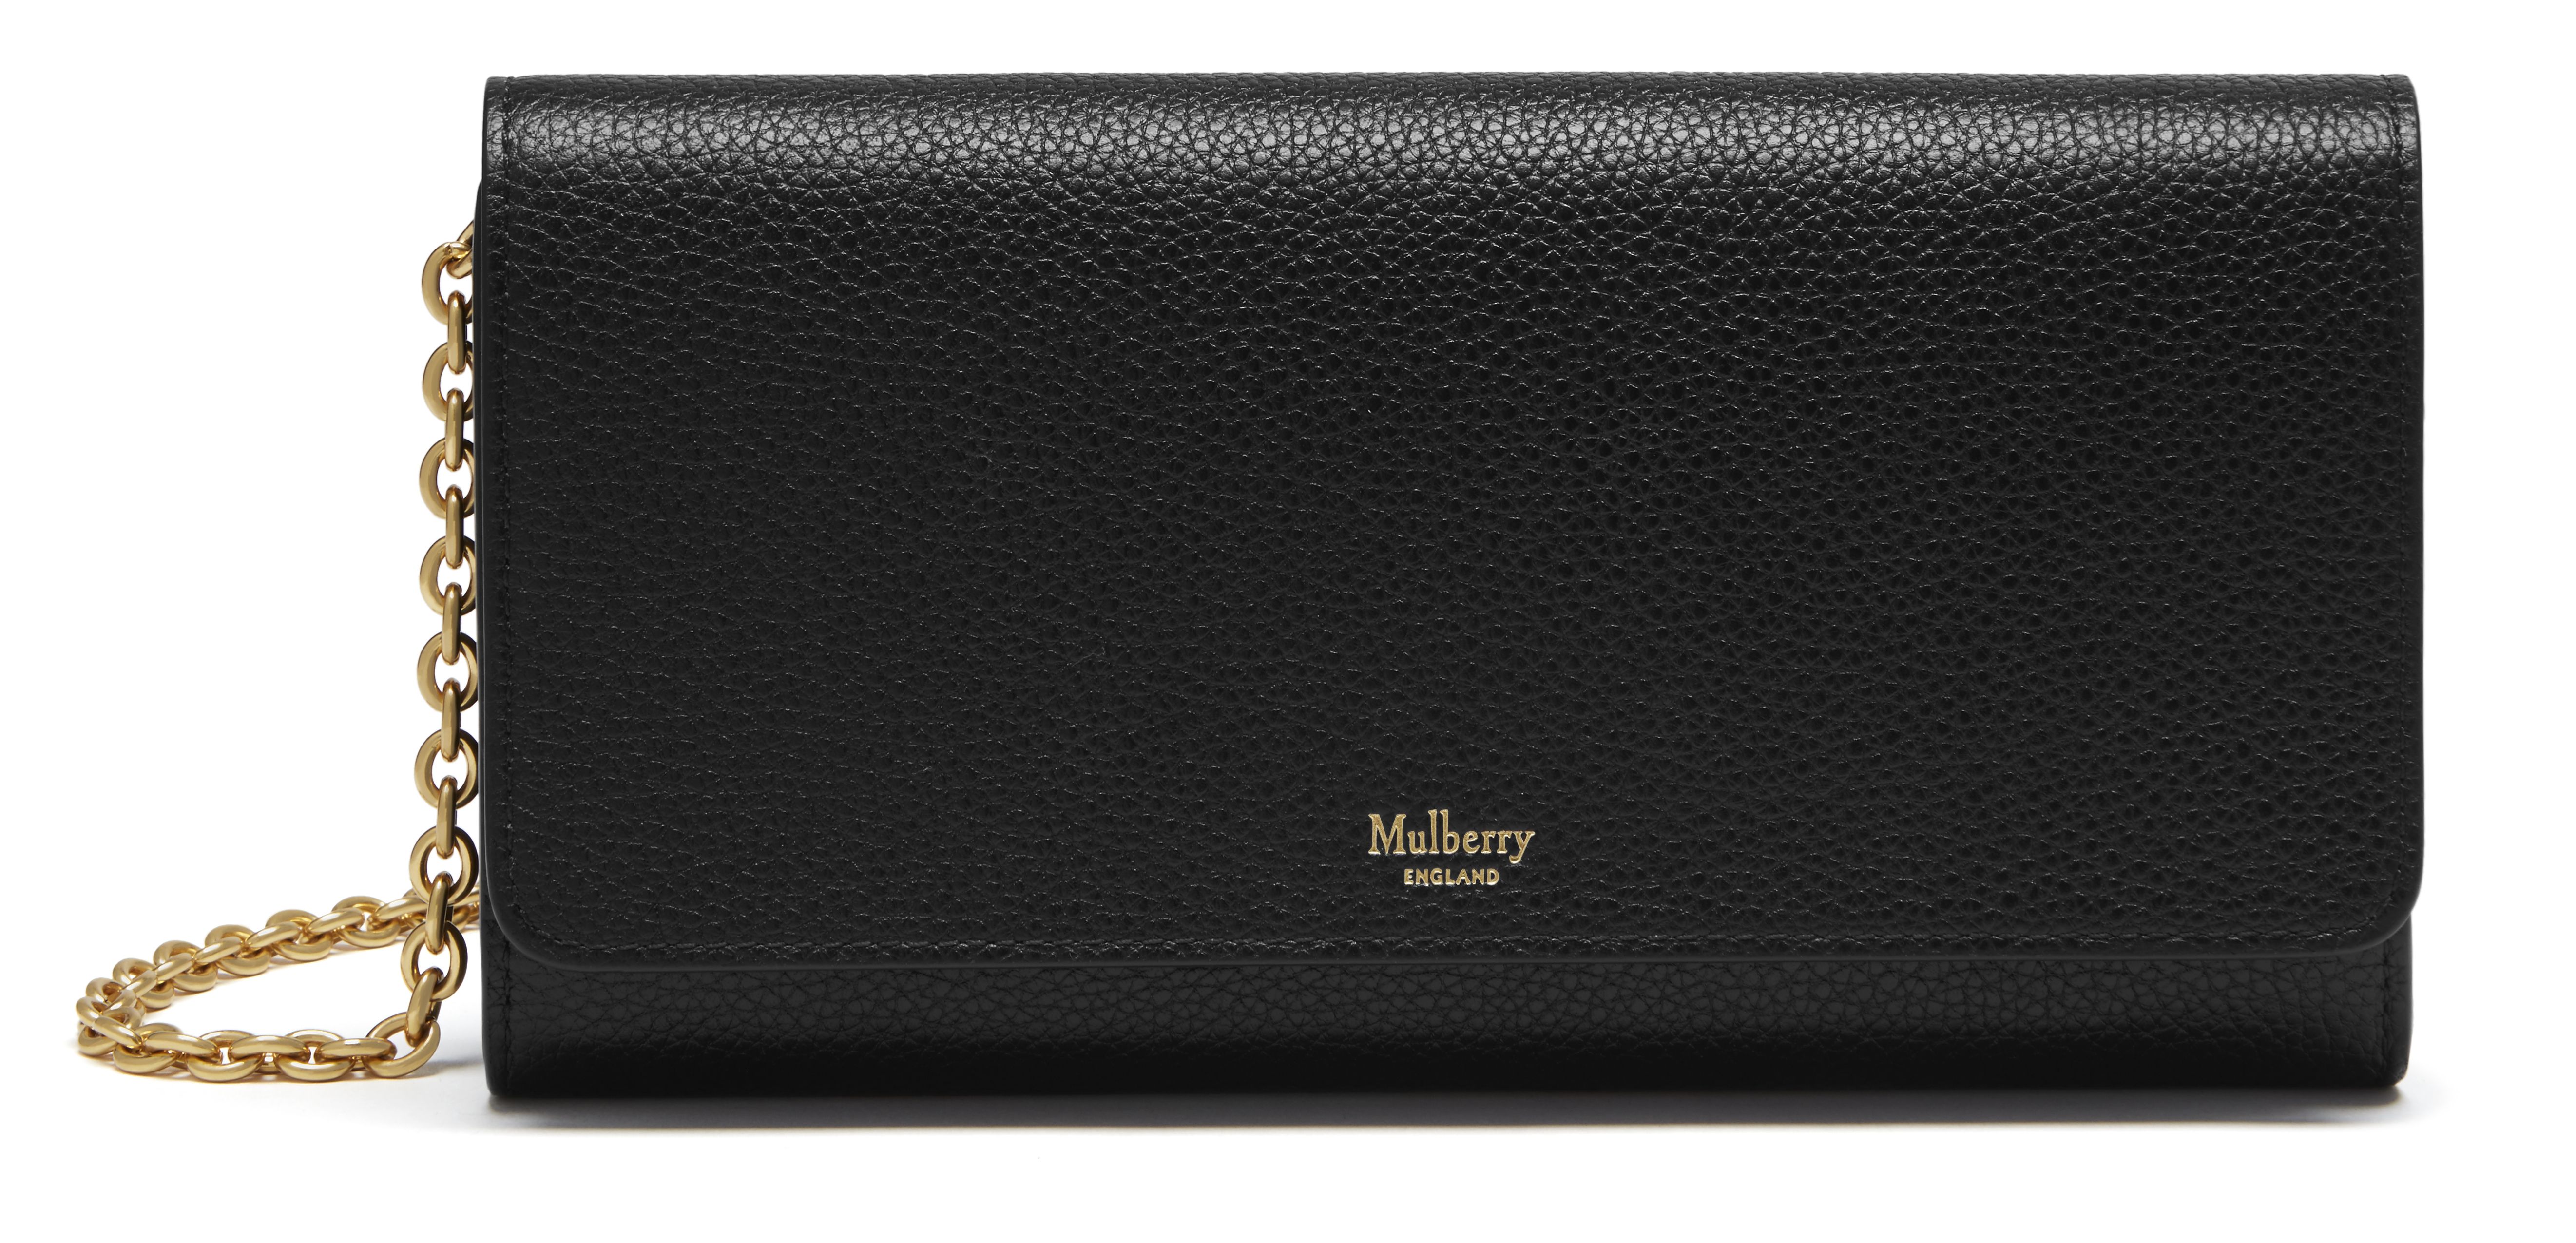 Mulberry purse | Flutterby's Boutique